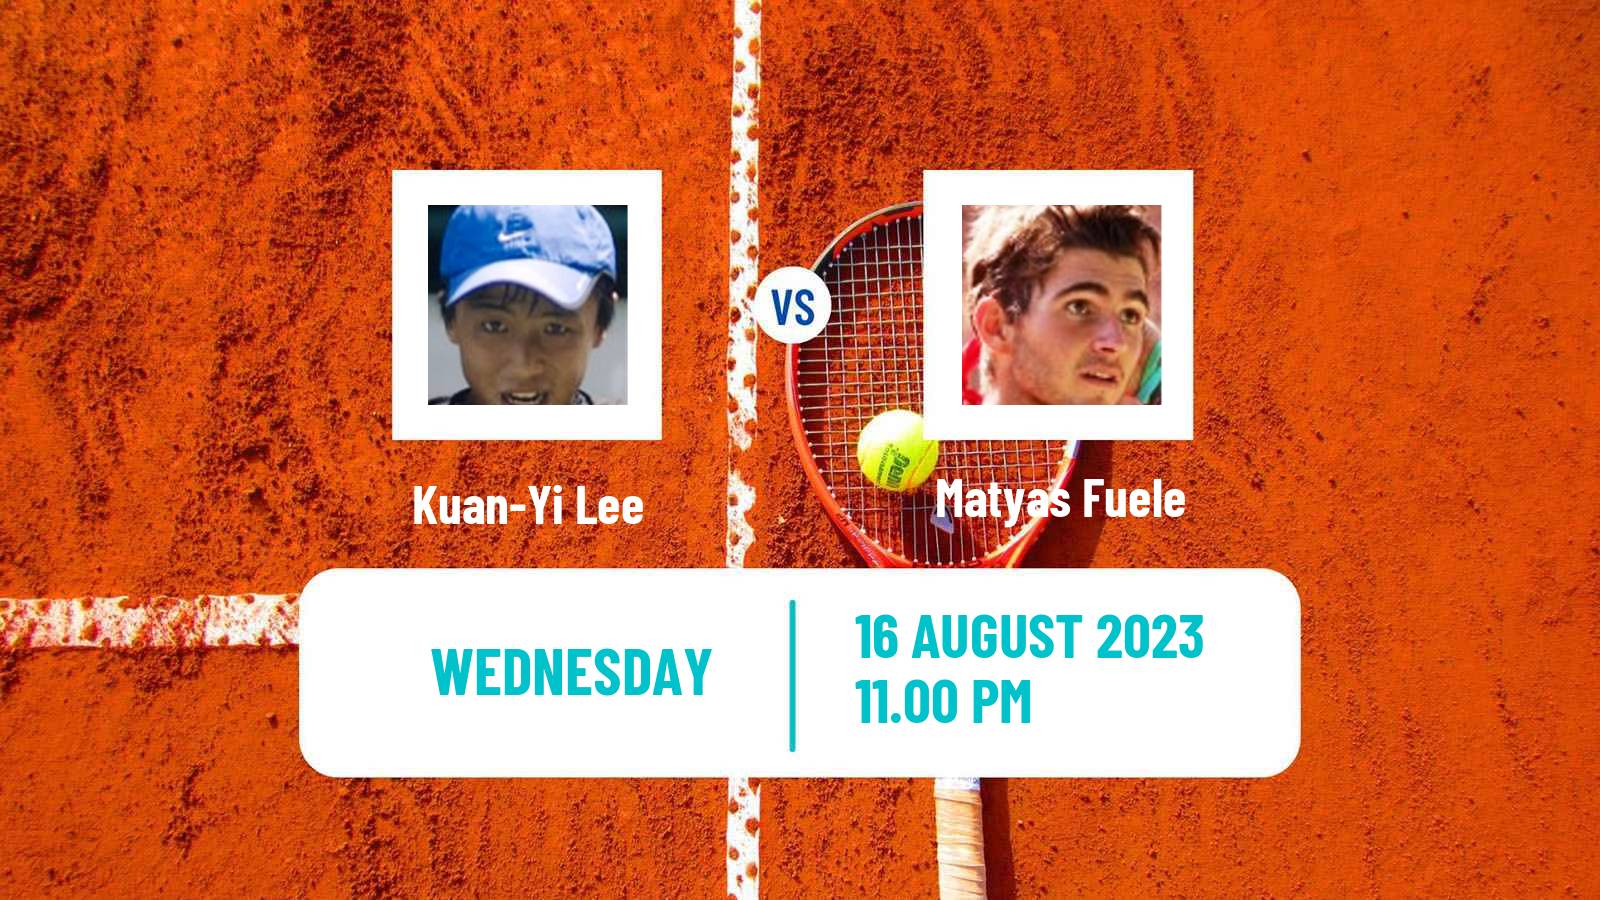 Tennis ITF M25 Tainan Men Kuan-Yi Lee - Matyas Fuele